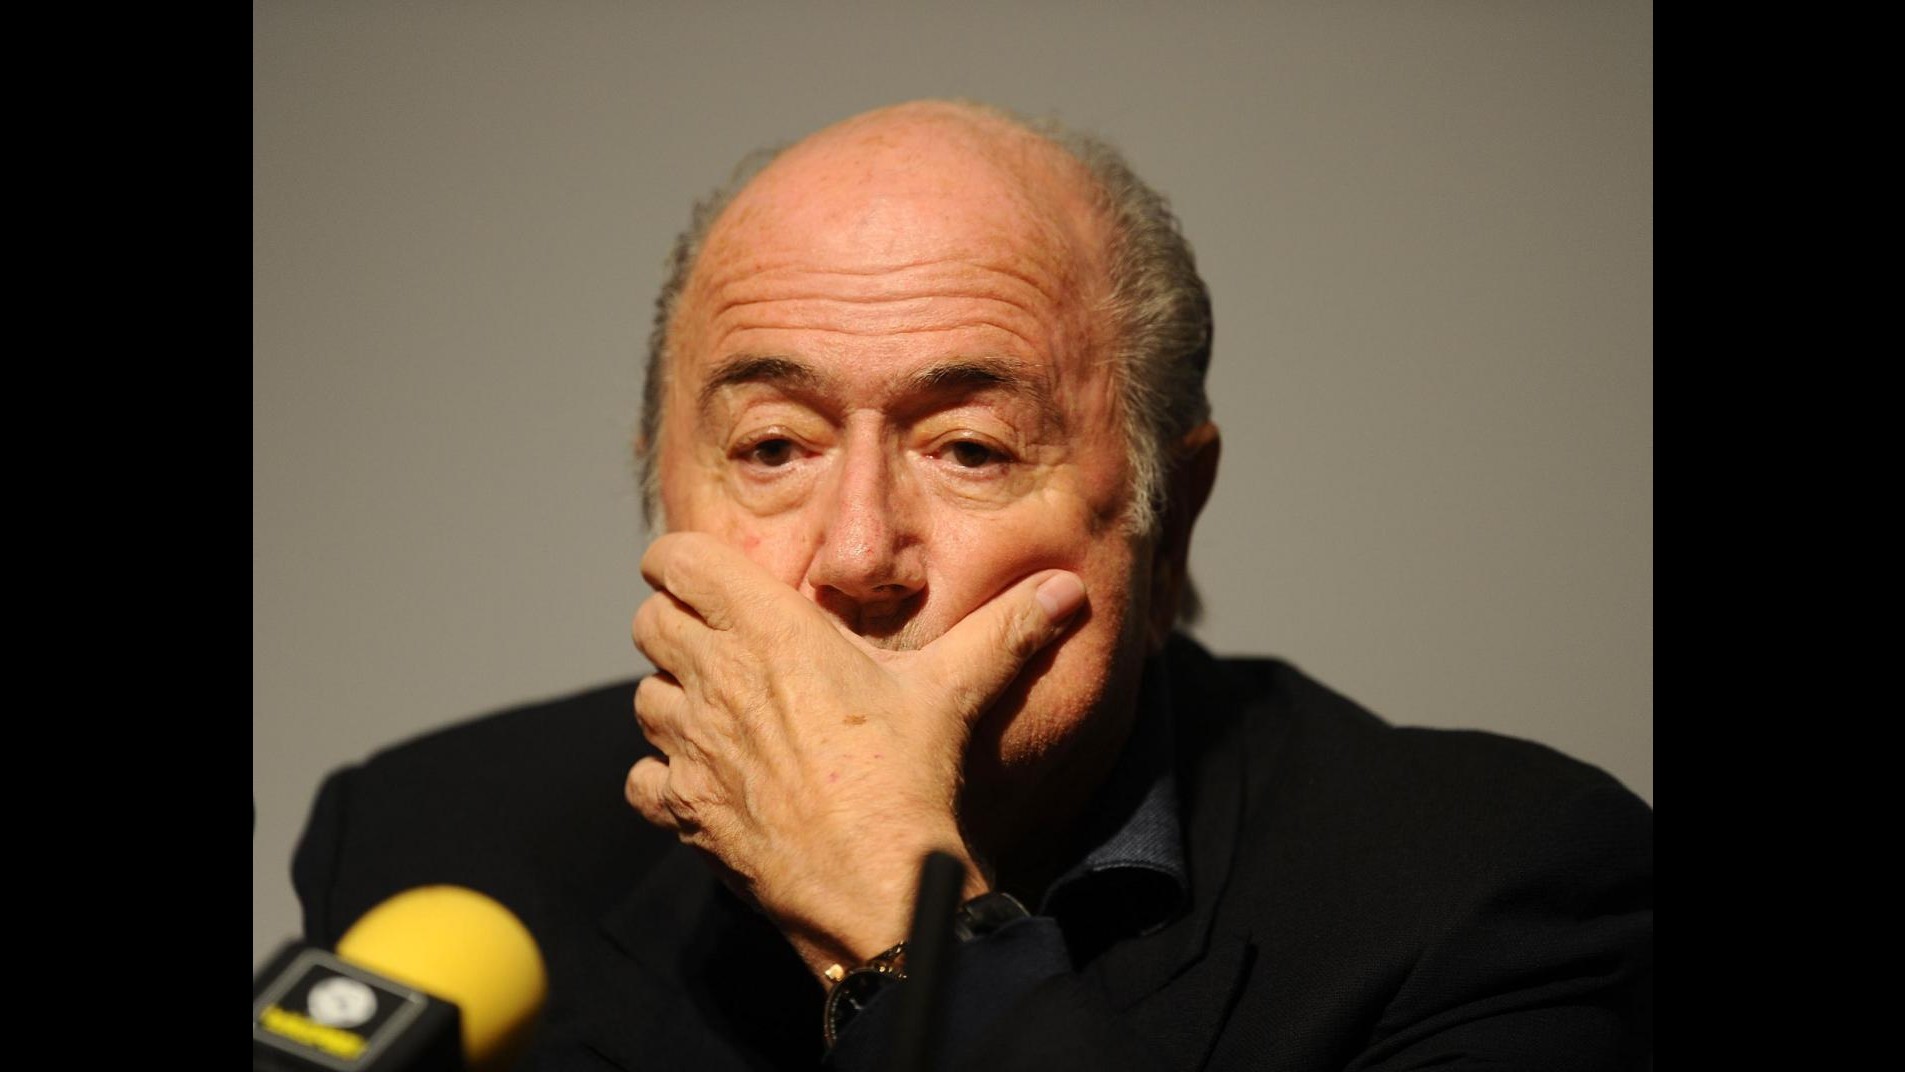 Calcio, Blatter dimesso dall’ospedale dopo il ricovero per stress